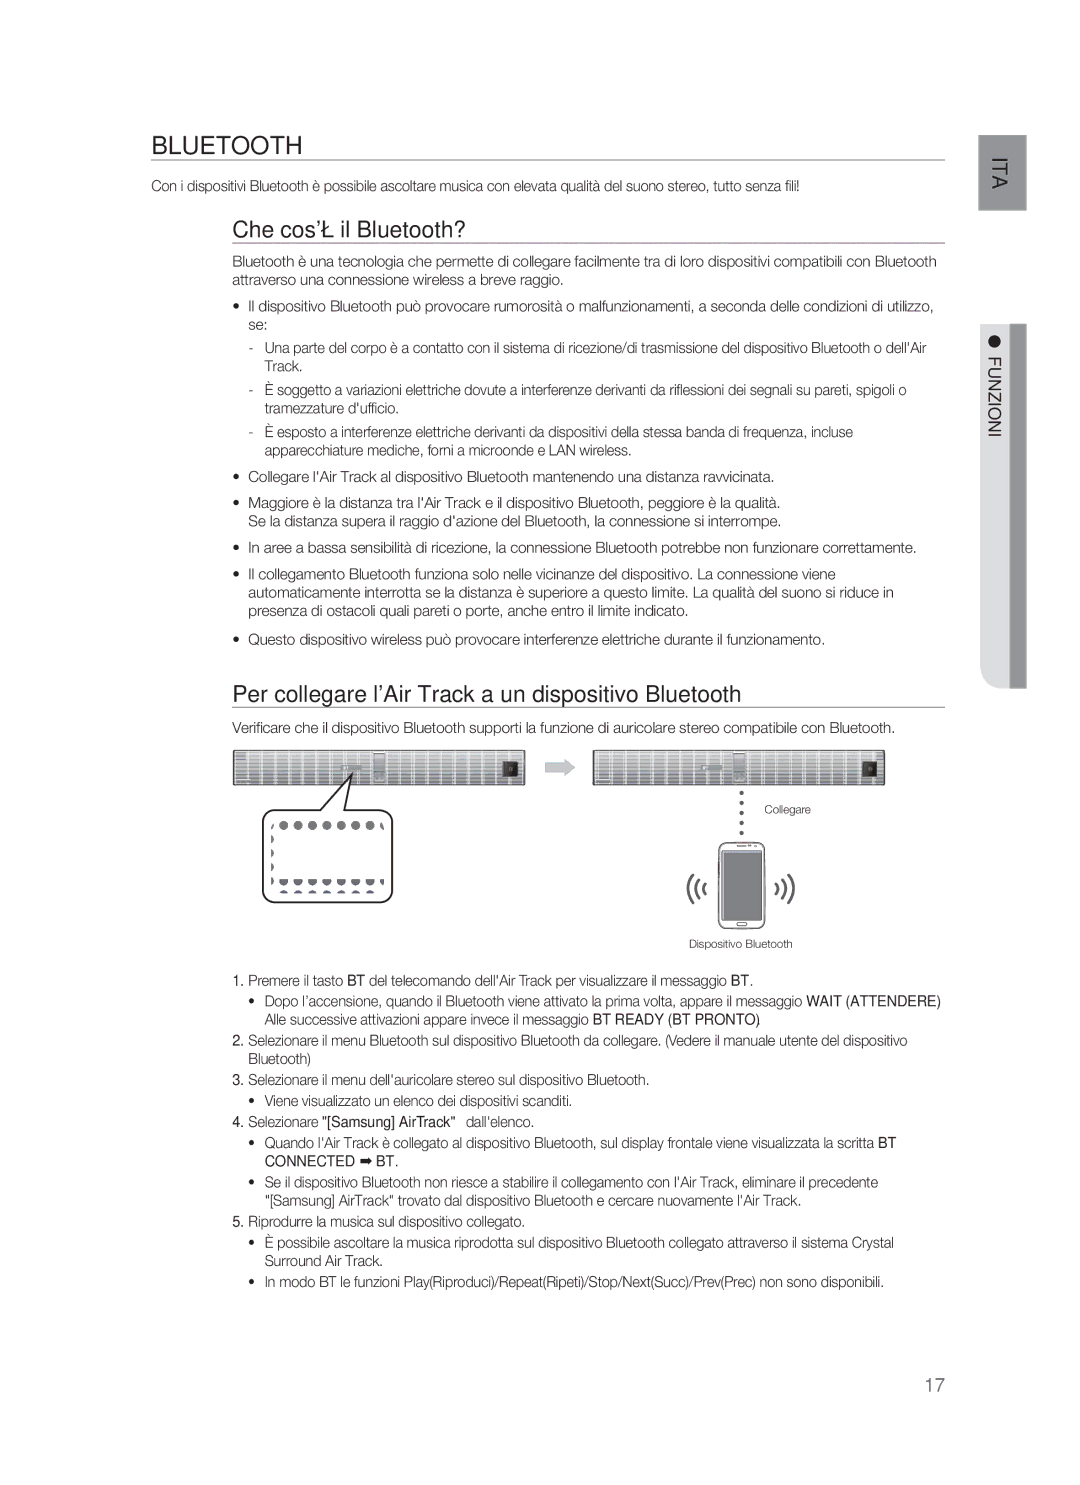 Samsung HW-F850/ZF manual Che cosè il Bluetooth?, Per collegare lAir Track a un dispositivo Bluetooth 